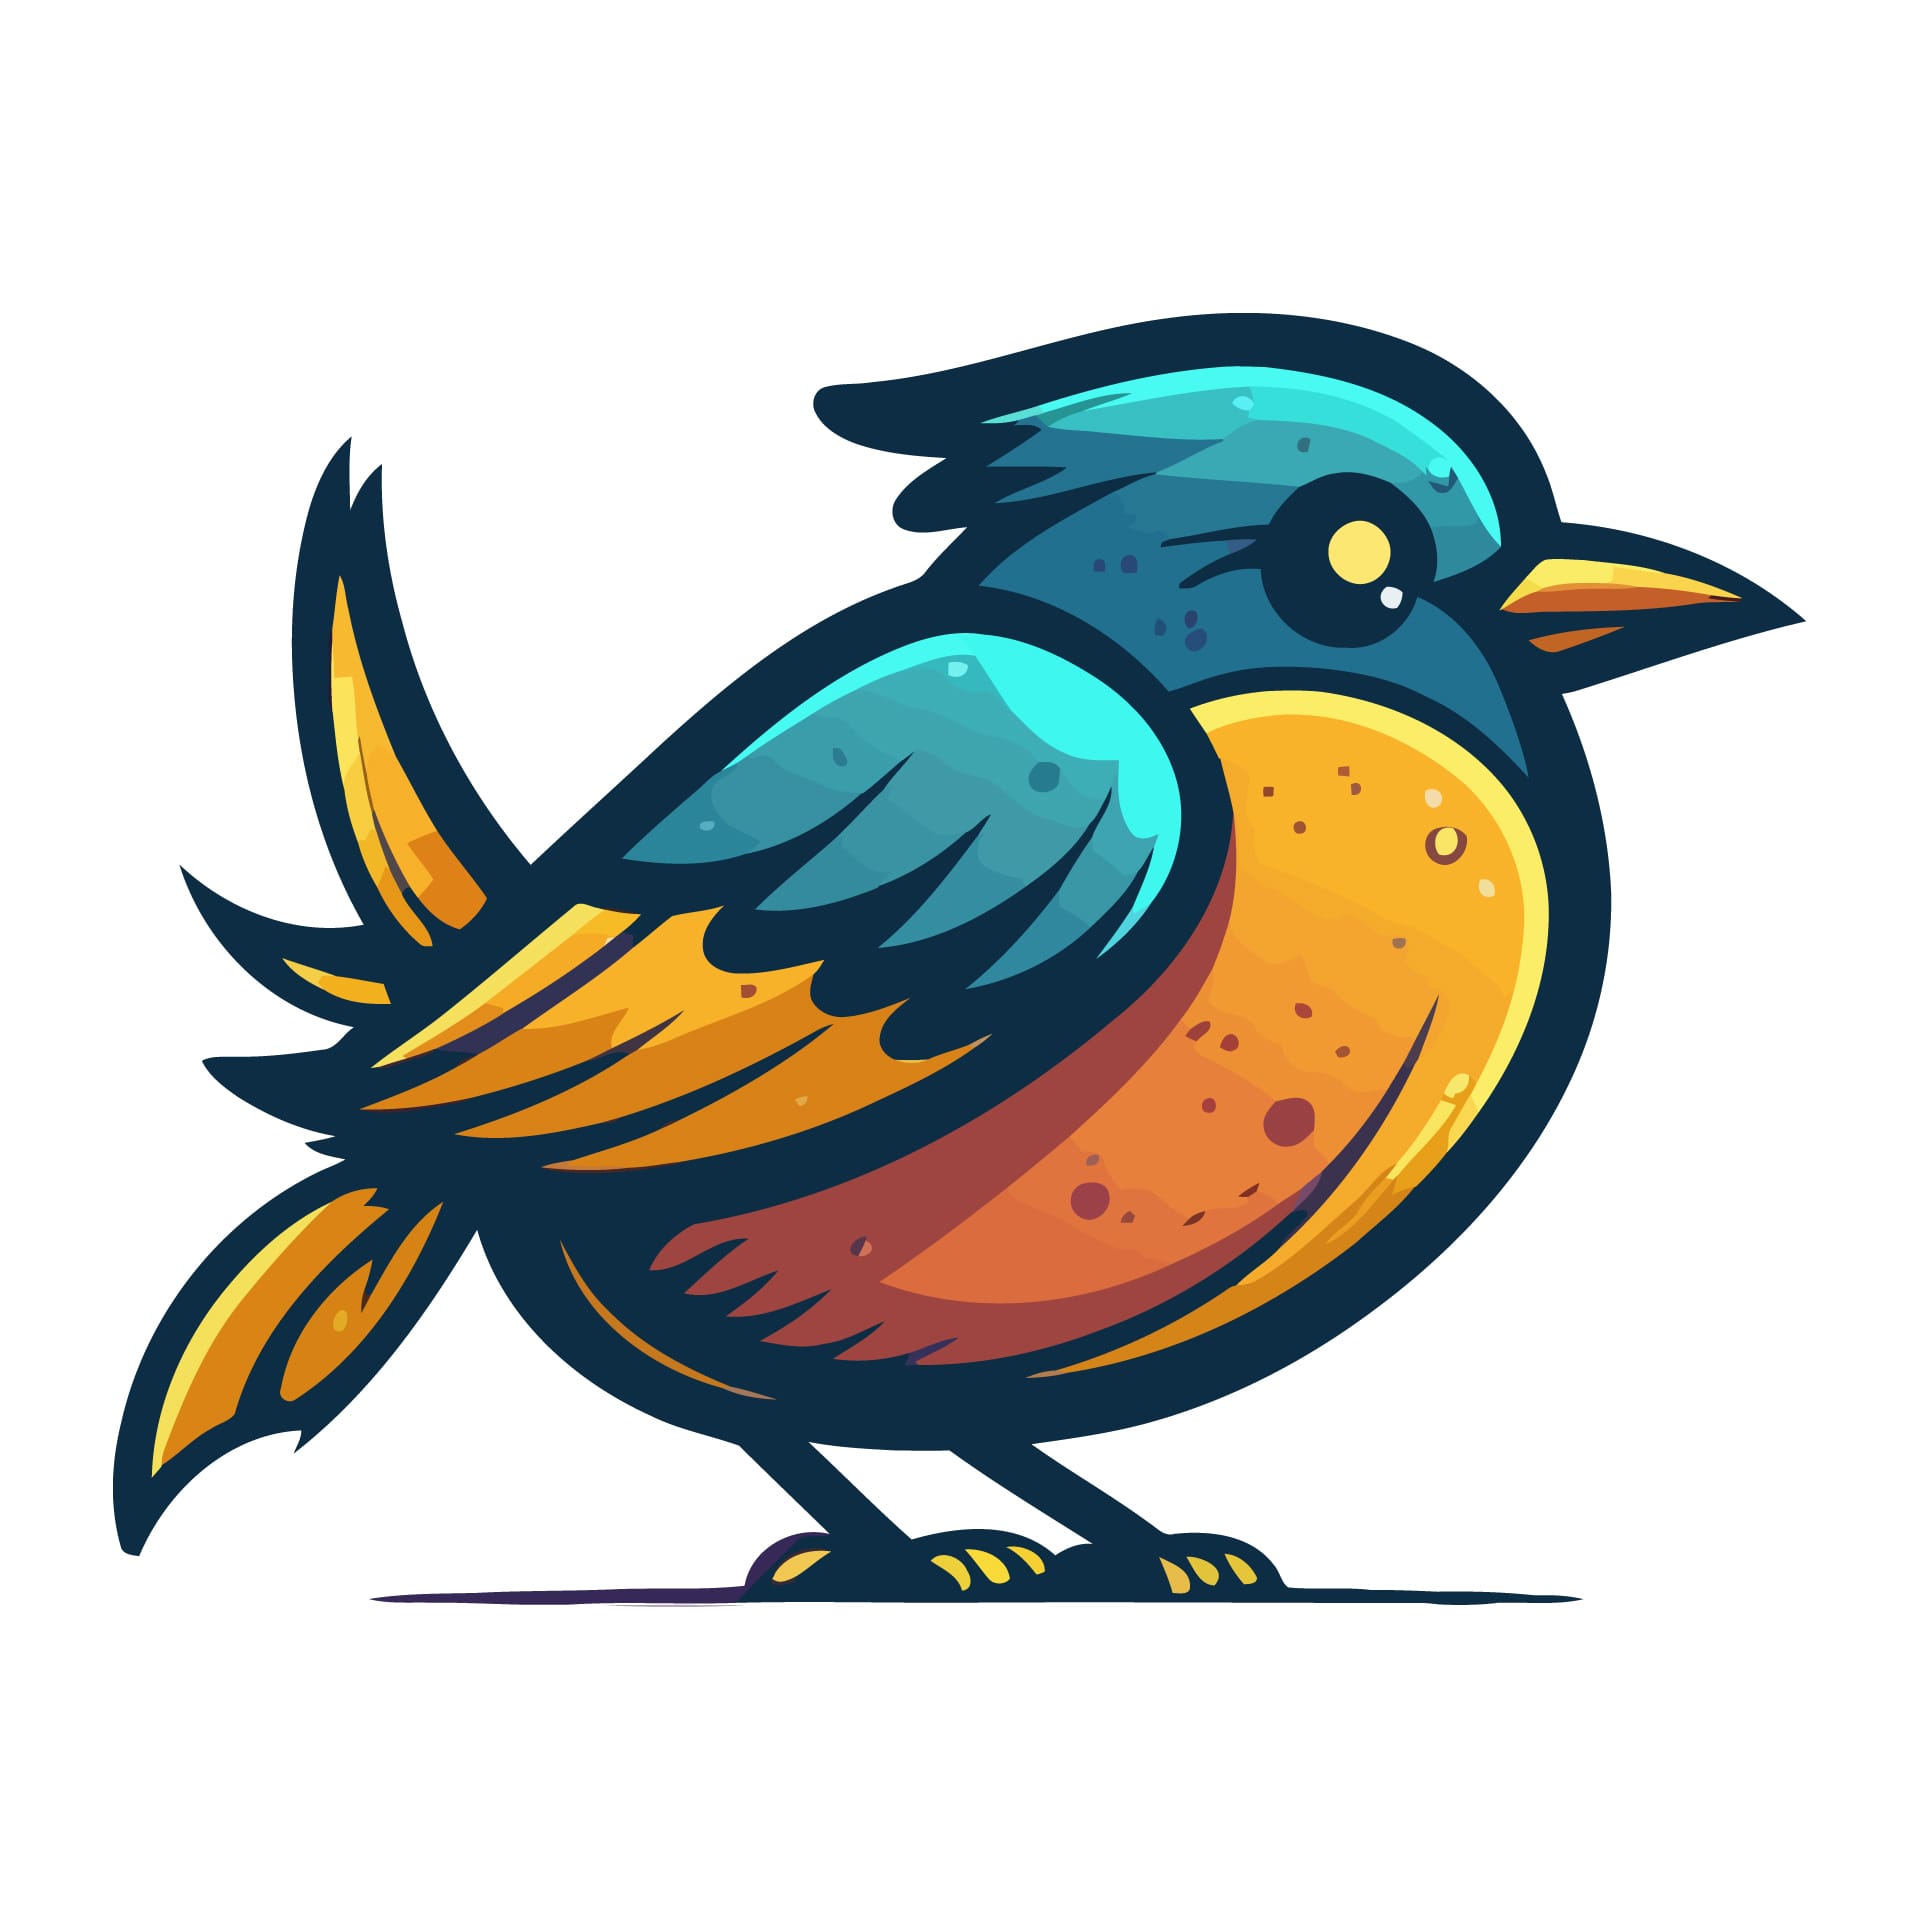 Little bird cartoon animal illustration logo mascot icon luminous image